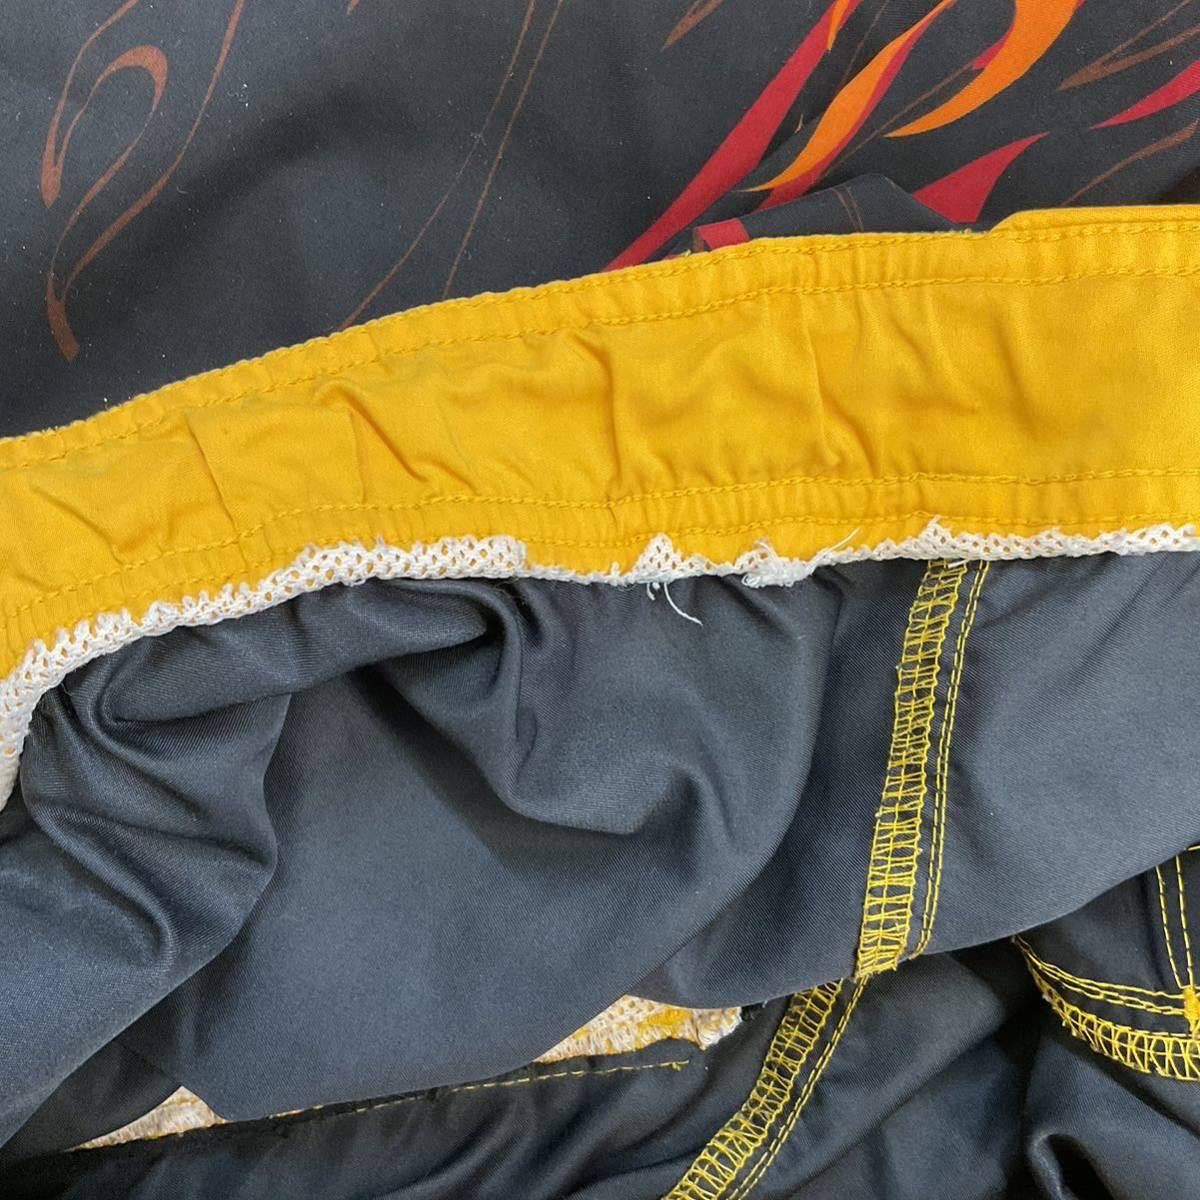 The Original Arizonaf Ray m общий рисунок шорты L плавки шорты для серфинга море хлеб купальный костюм огненный узор общий рисунок есть zona